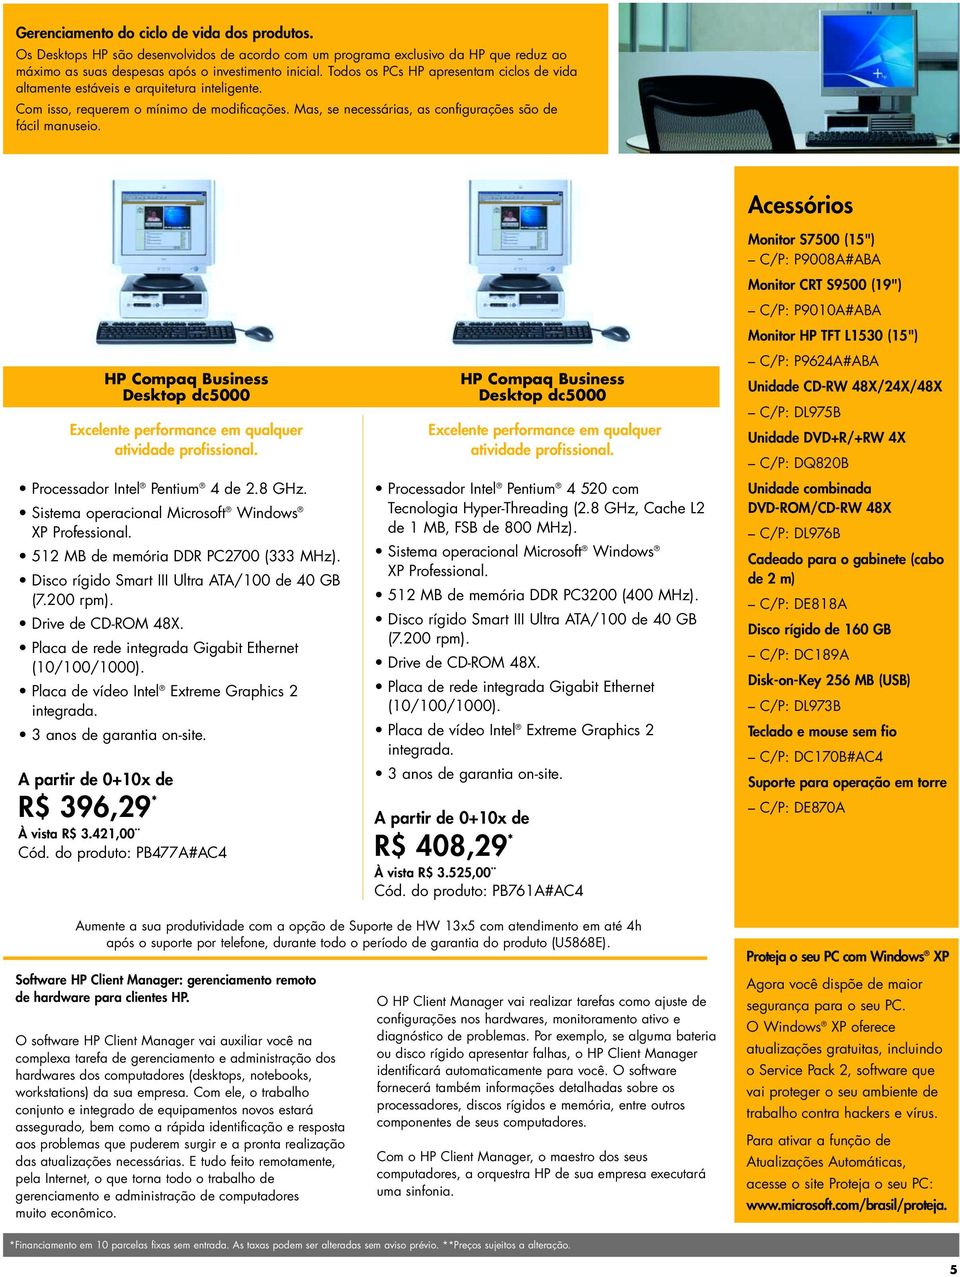 HP Compaq Business Desktop dc5000 Excelente performance em qualquer atividade profissional. Processador Intel Pentium 4 de 2.8 GHz. Sistema operacional Microsoft Windows XP Professional.